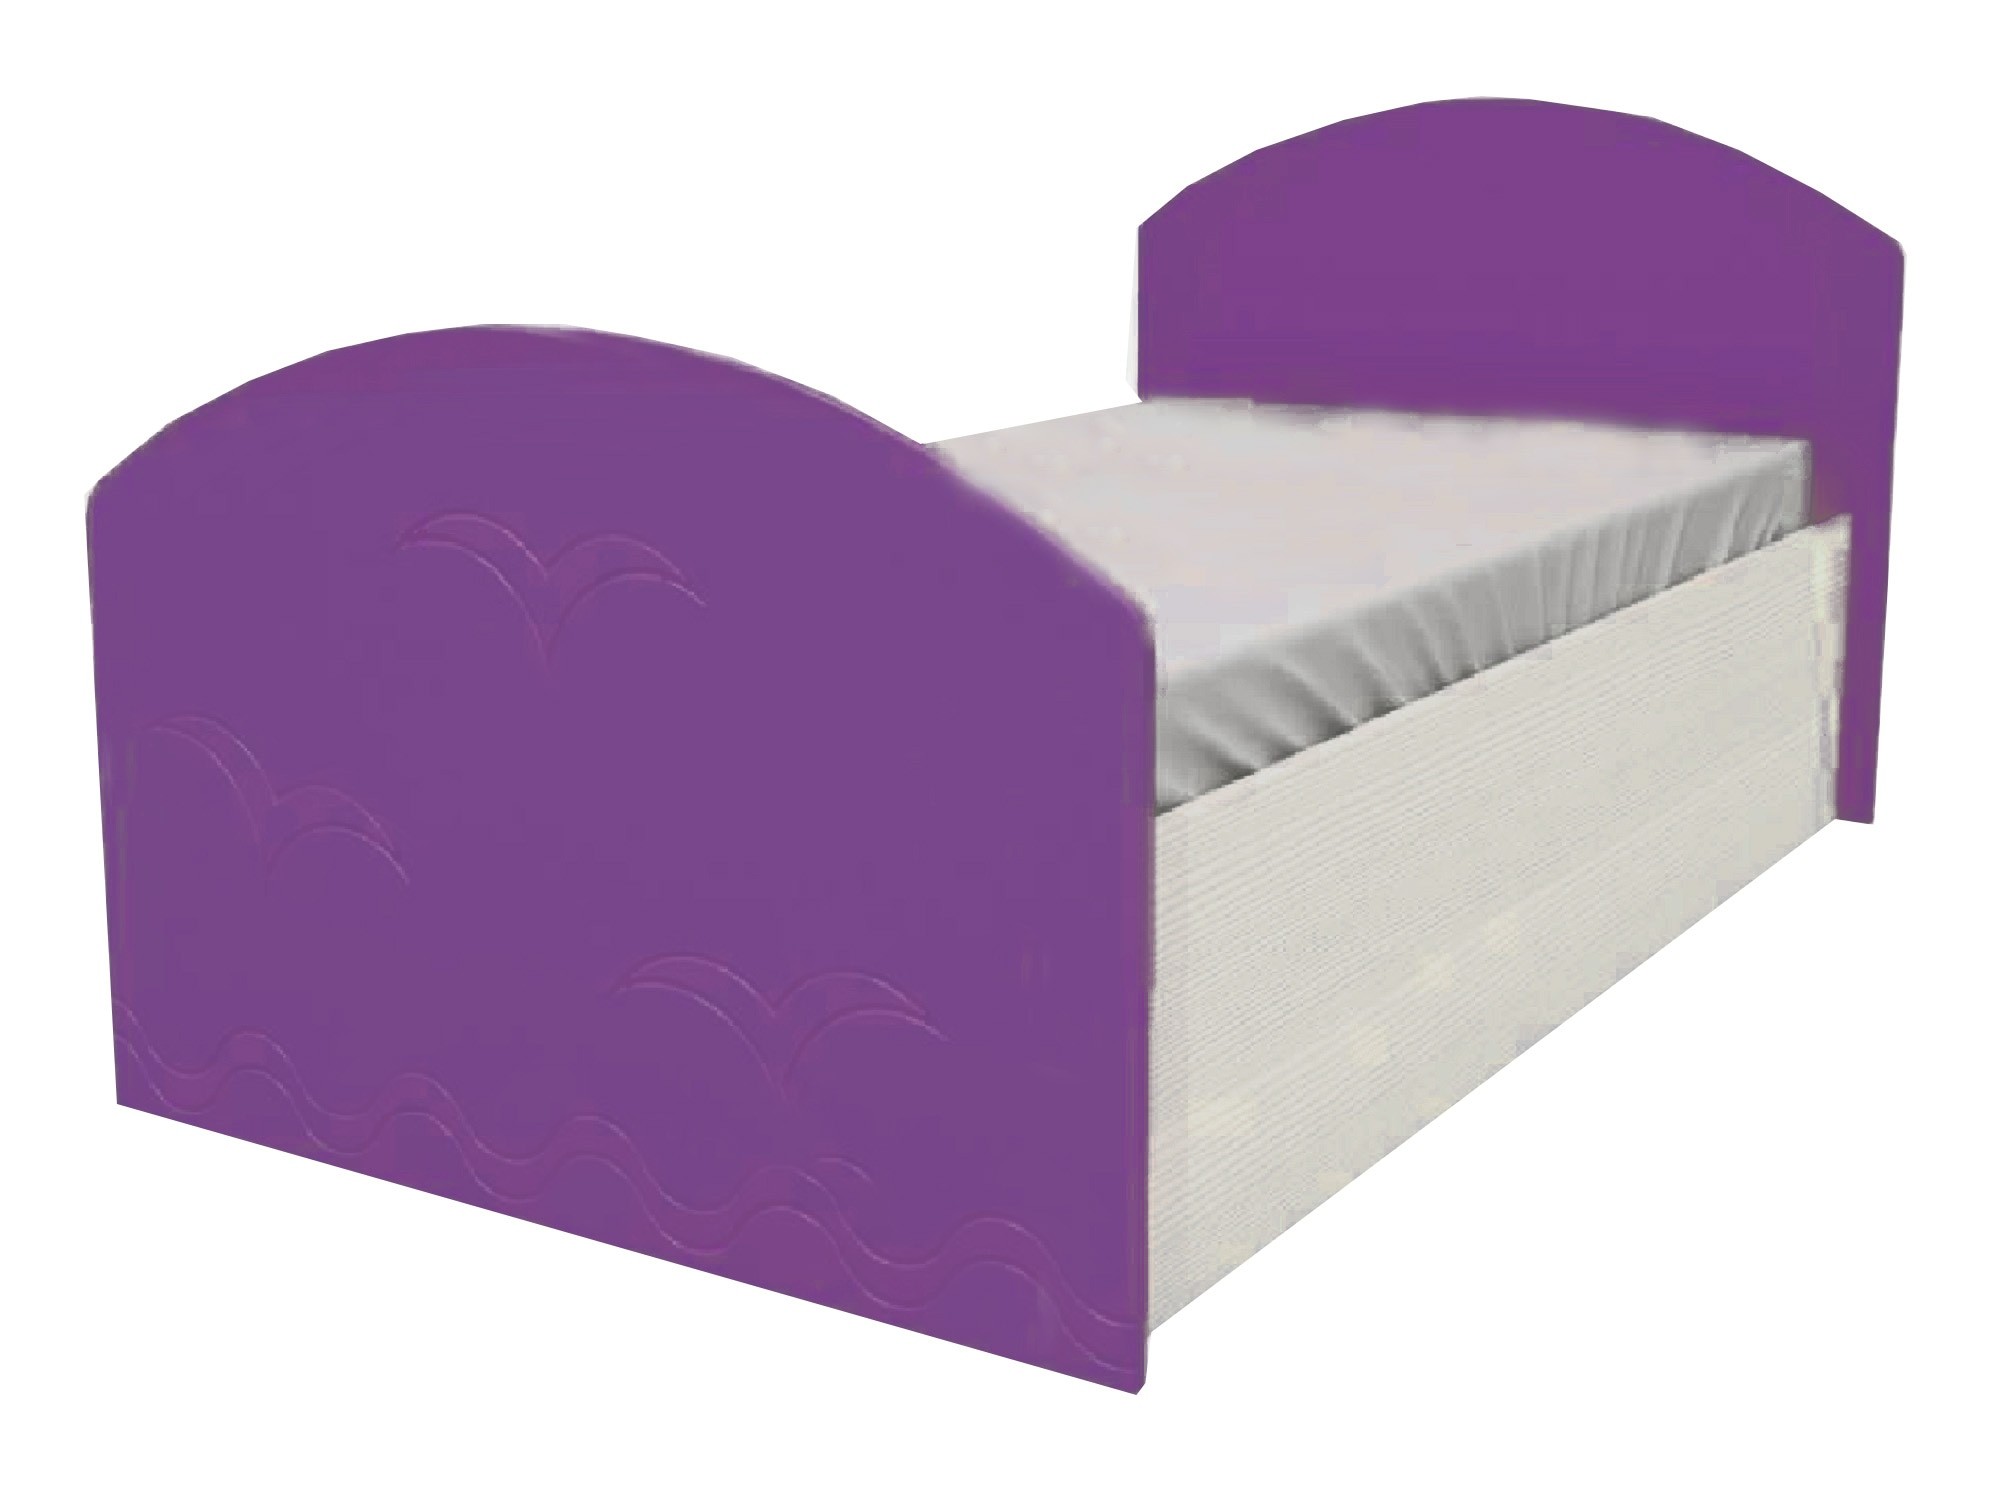 Юниор-2 Детская кровать 80, металлик (Фиолетовый металлик, Дуб белёный) Фиолетовый металлик, МДФ, ЛДСП юниор 2 стенка металлик фиолетовый металлик дуб белёный дуб белёный мдф лдсп